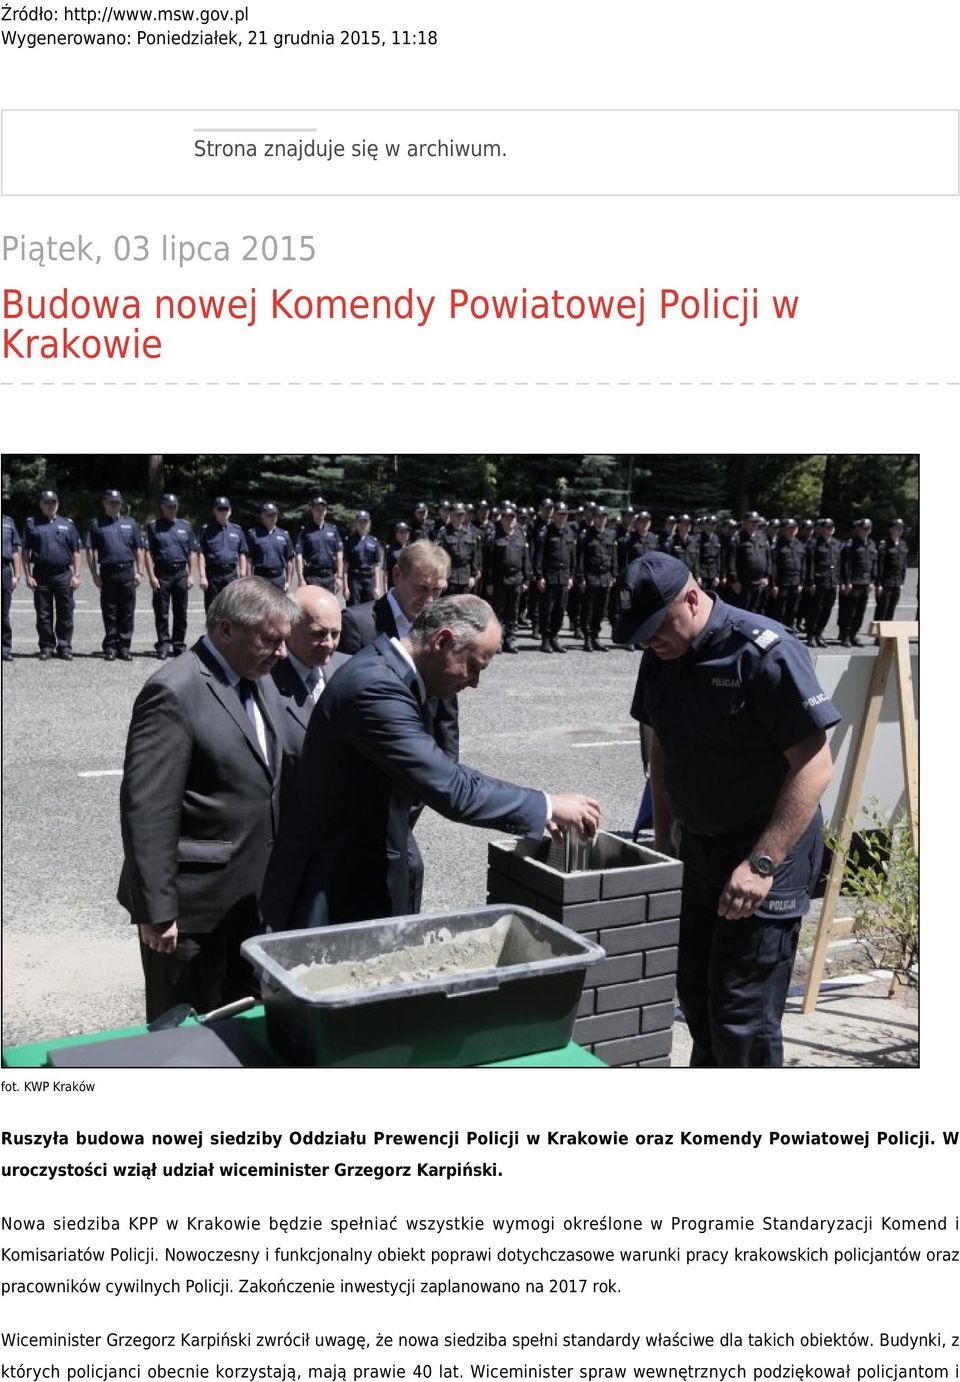 Nowa siedziba KPP w Krakowie będzie spełniać wszystkie wymogi określone w Programie Standaryzacji Komend i Komisariatów Policji.